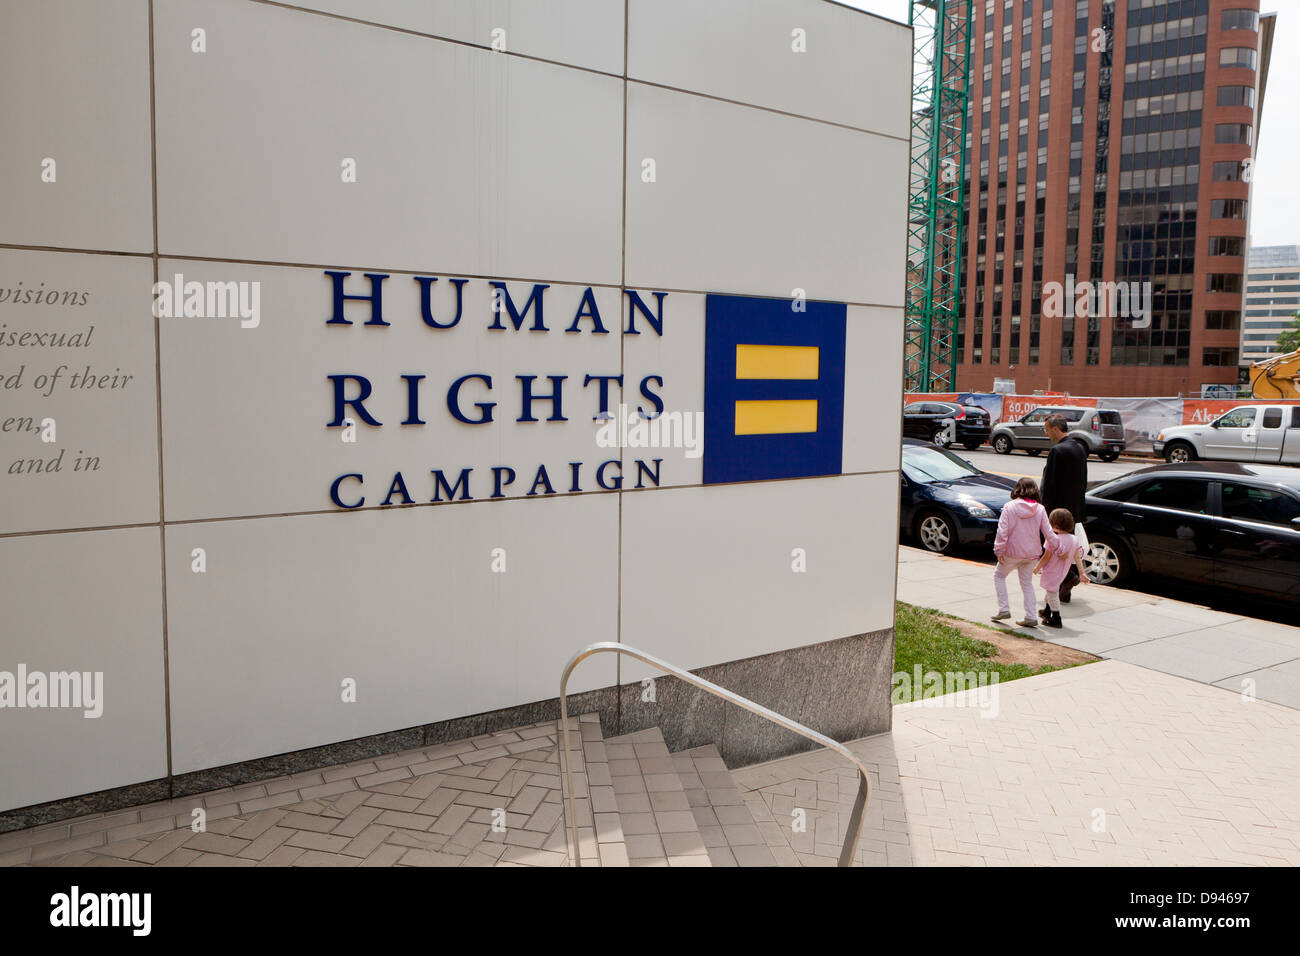 Les droits de l'homme bâtiment Campagne - Washington, DC USA Banque D'Images